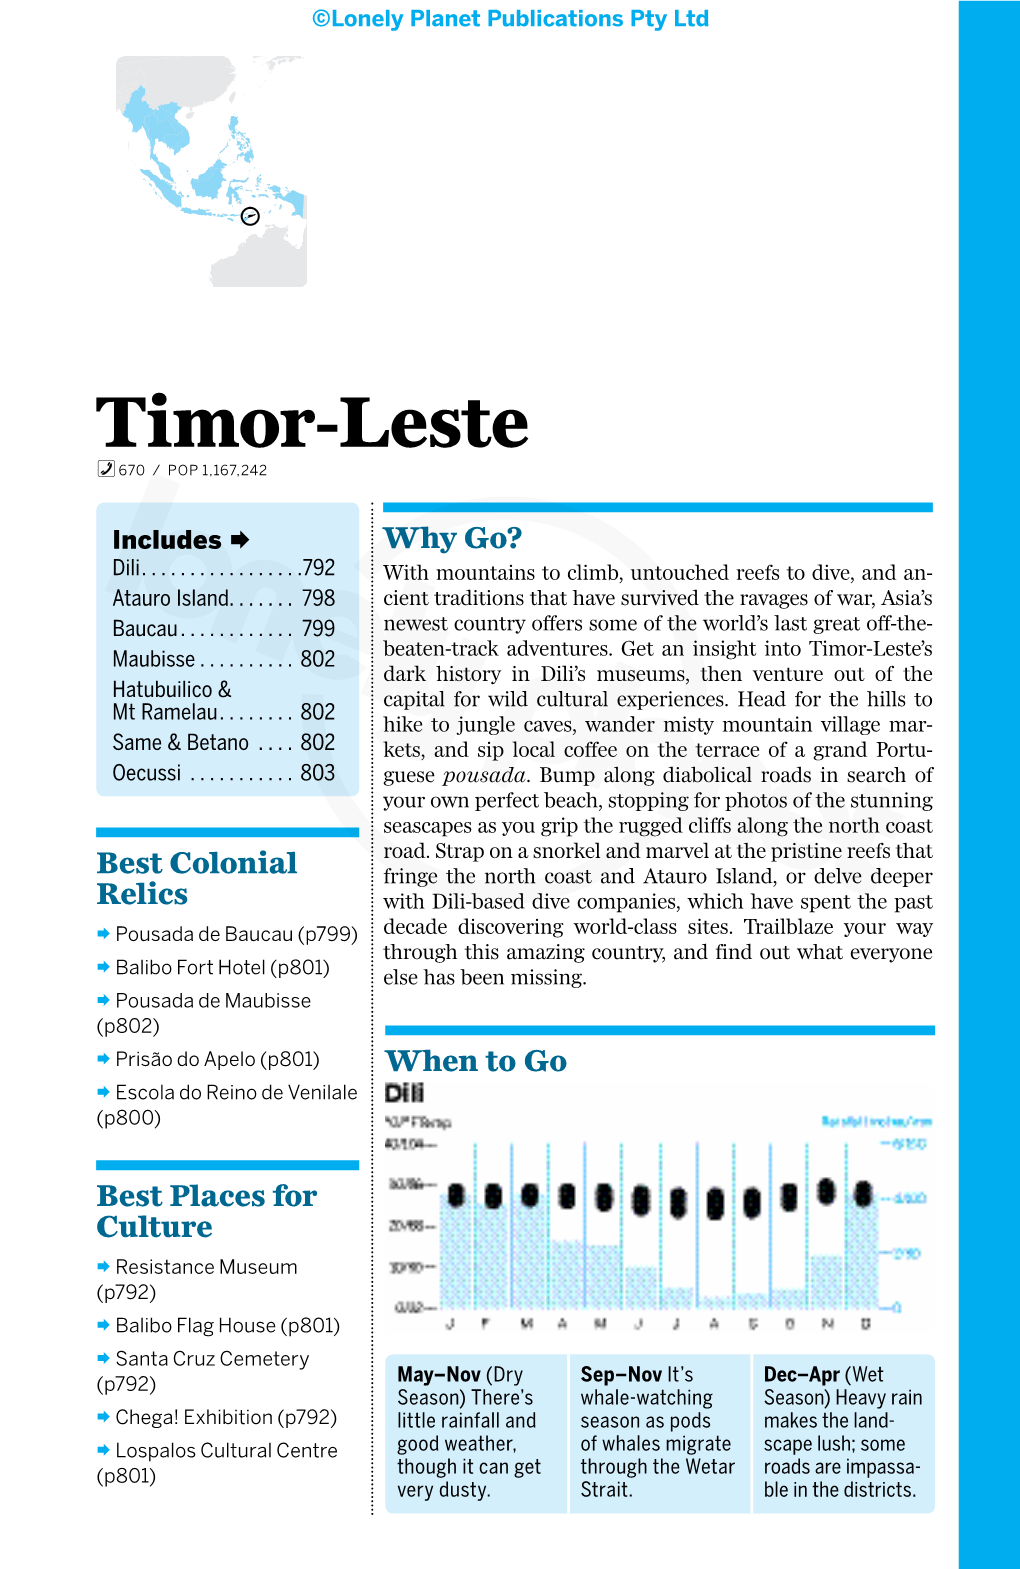 Timor-Leste 670 / POP 1,167,242